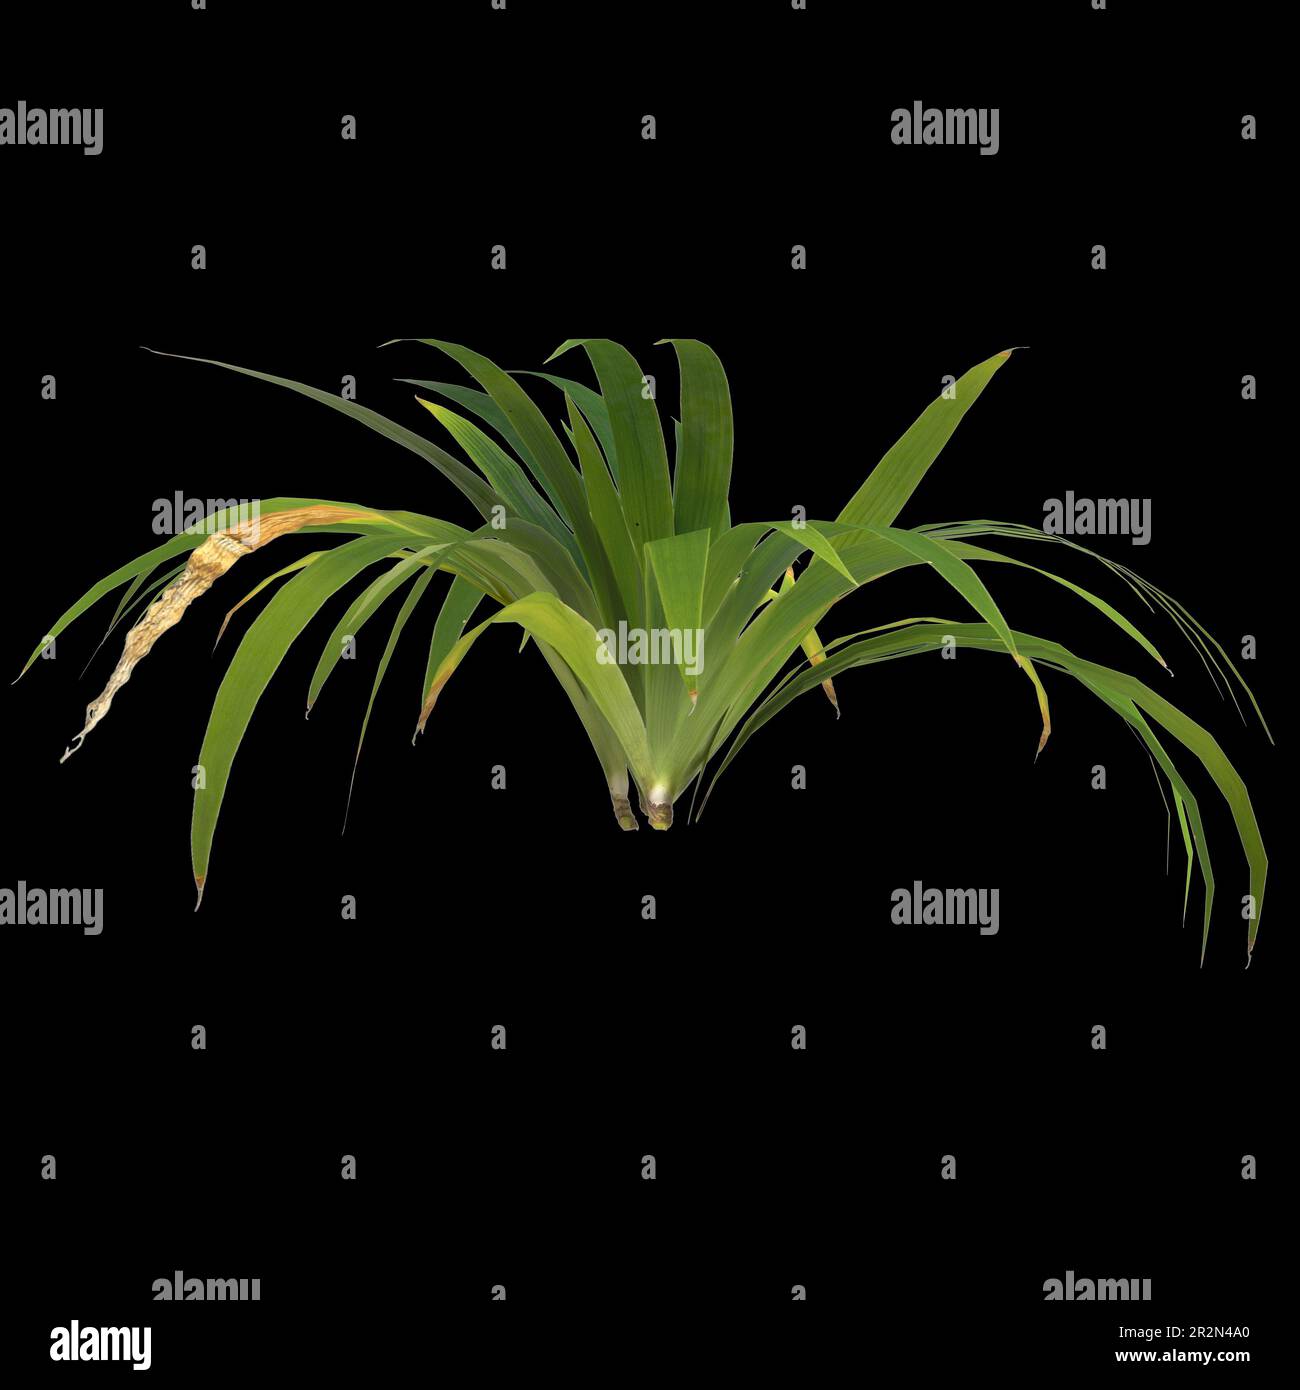 3d illustration of setaria palmifolia plant isolated on black background Stock Photo